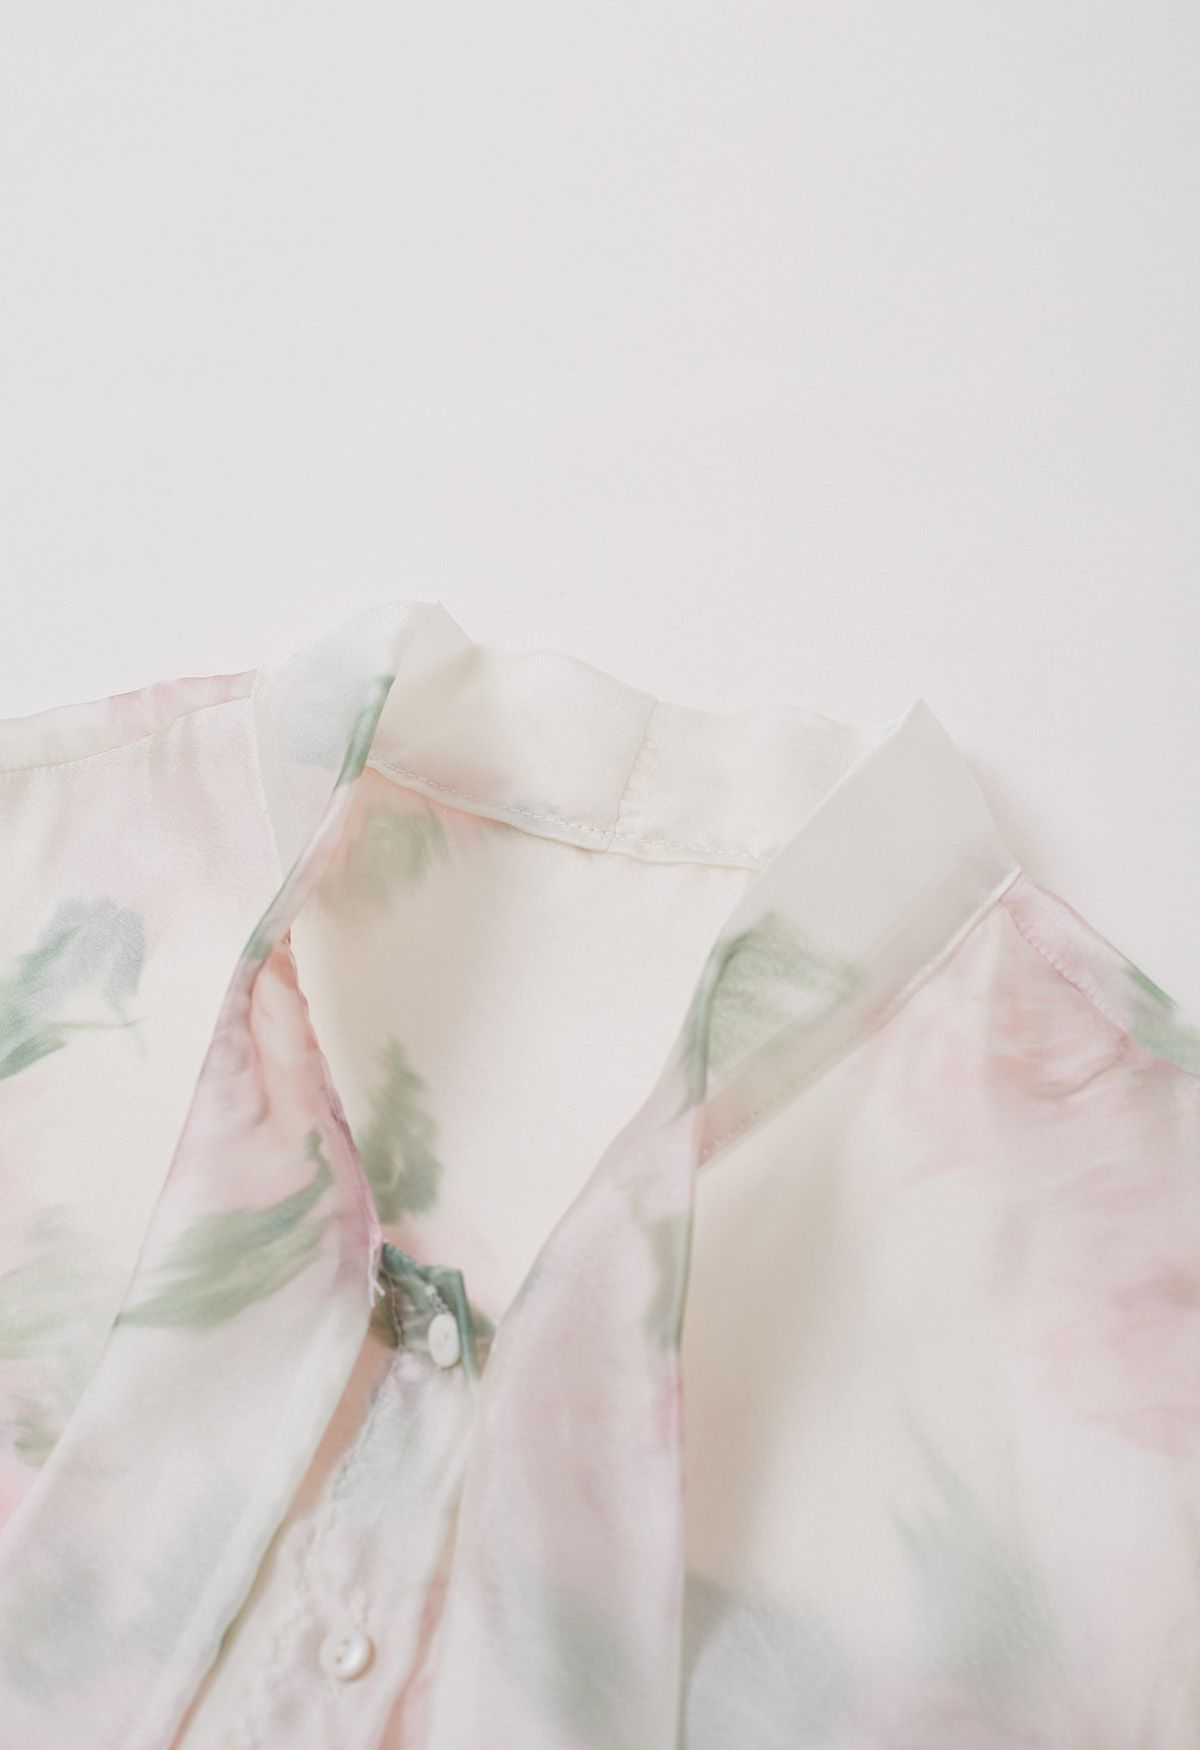 Fascinante camisa transparente con lazo floral de acuarela en color crema